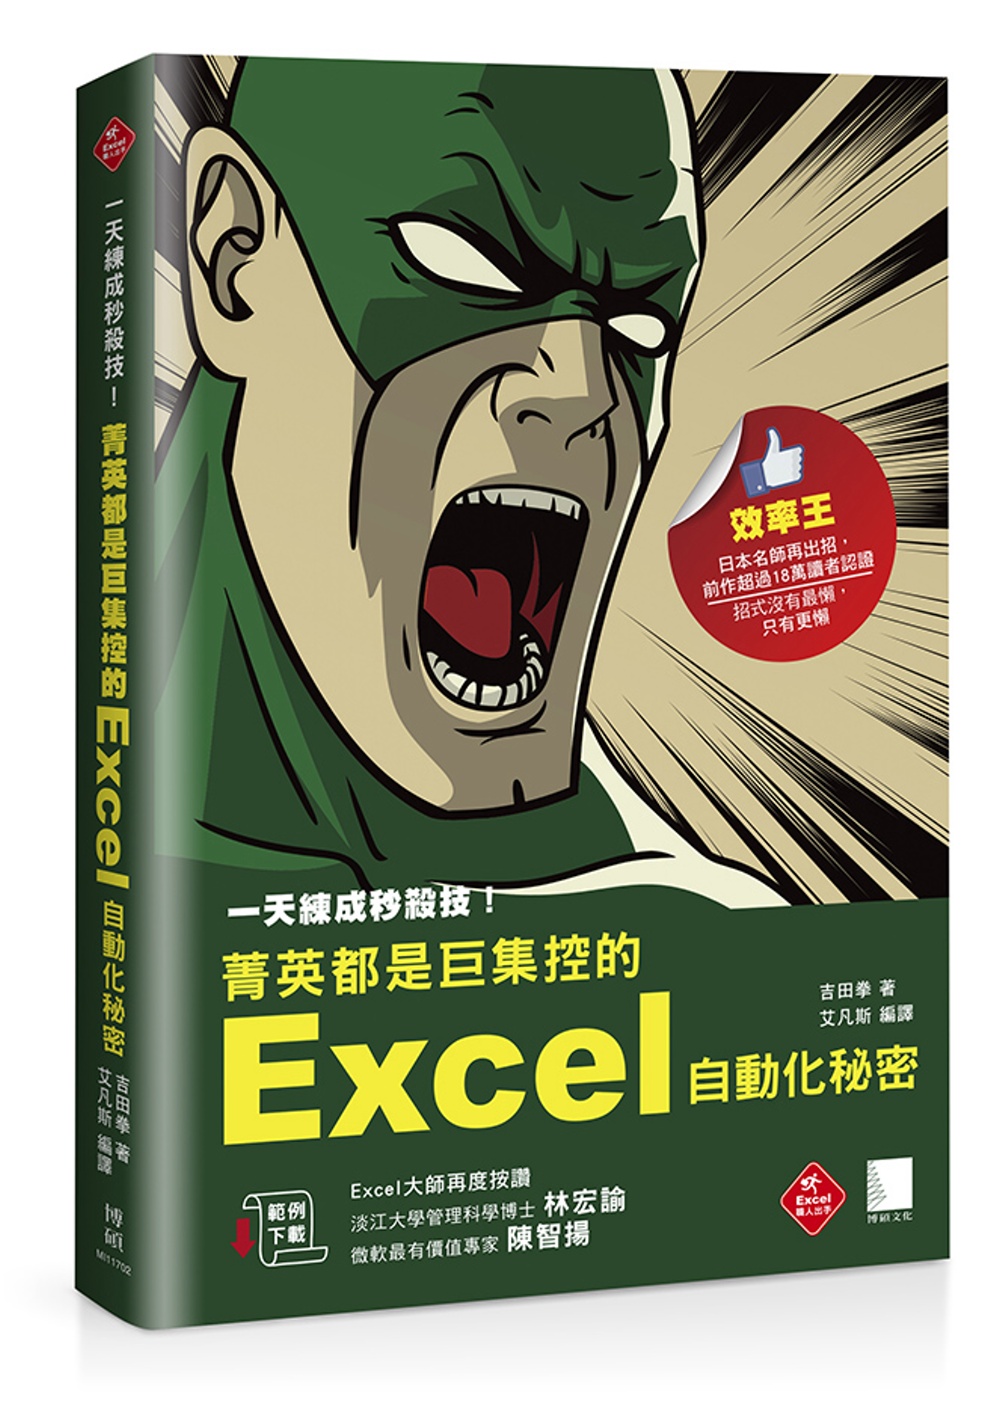 一天練成秒殺技！菁英都是巨集控的Excel自動化秘密(超過18萬讀者認證Excel業師再度告白)